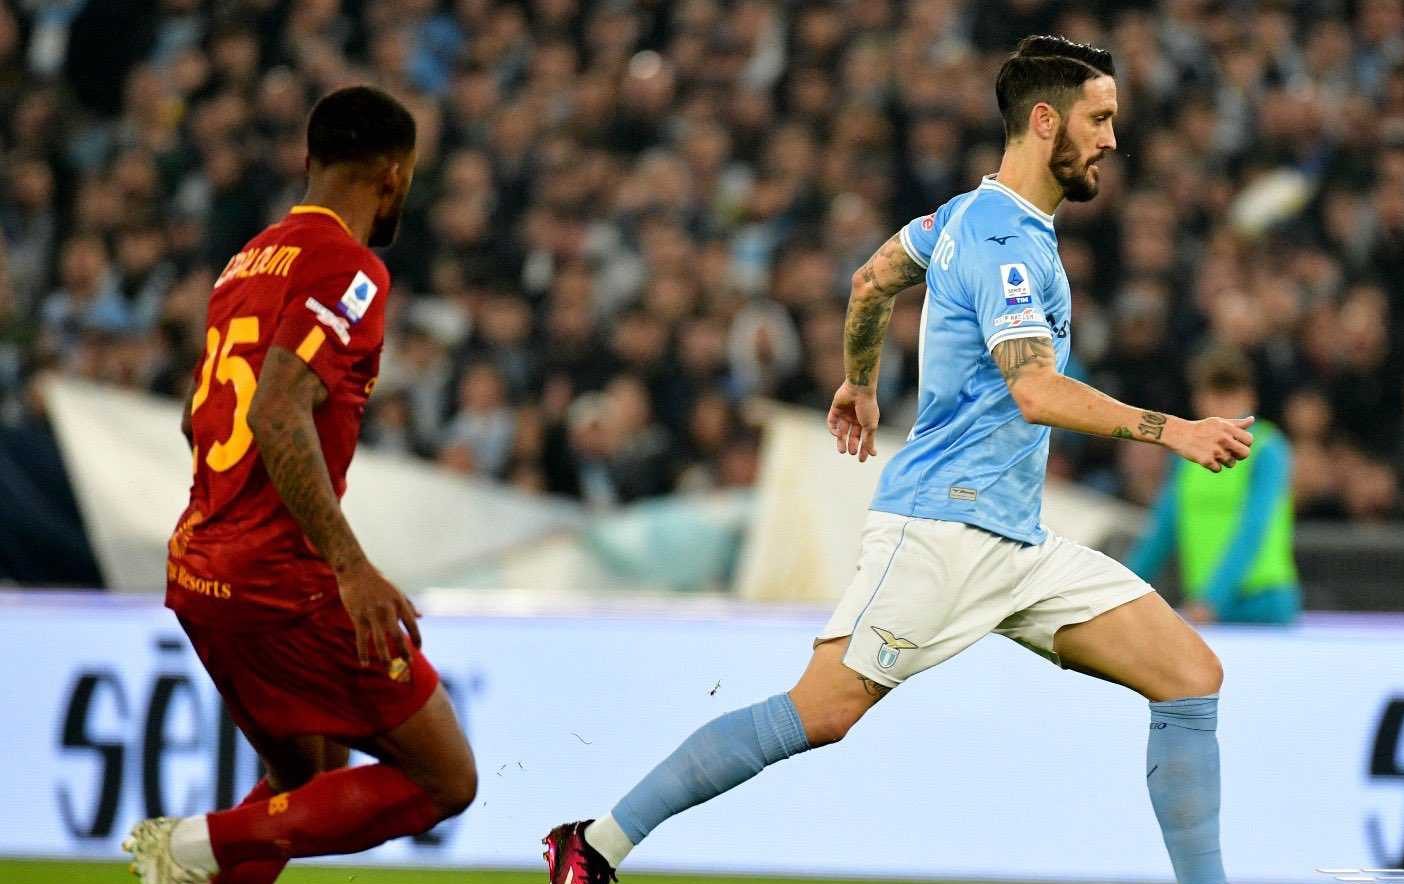 Le pagelle di Lazio-Roma (1-0): derby ai biancocelesti